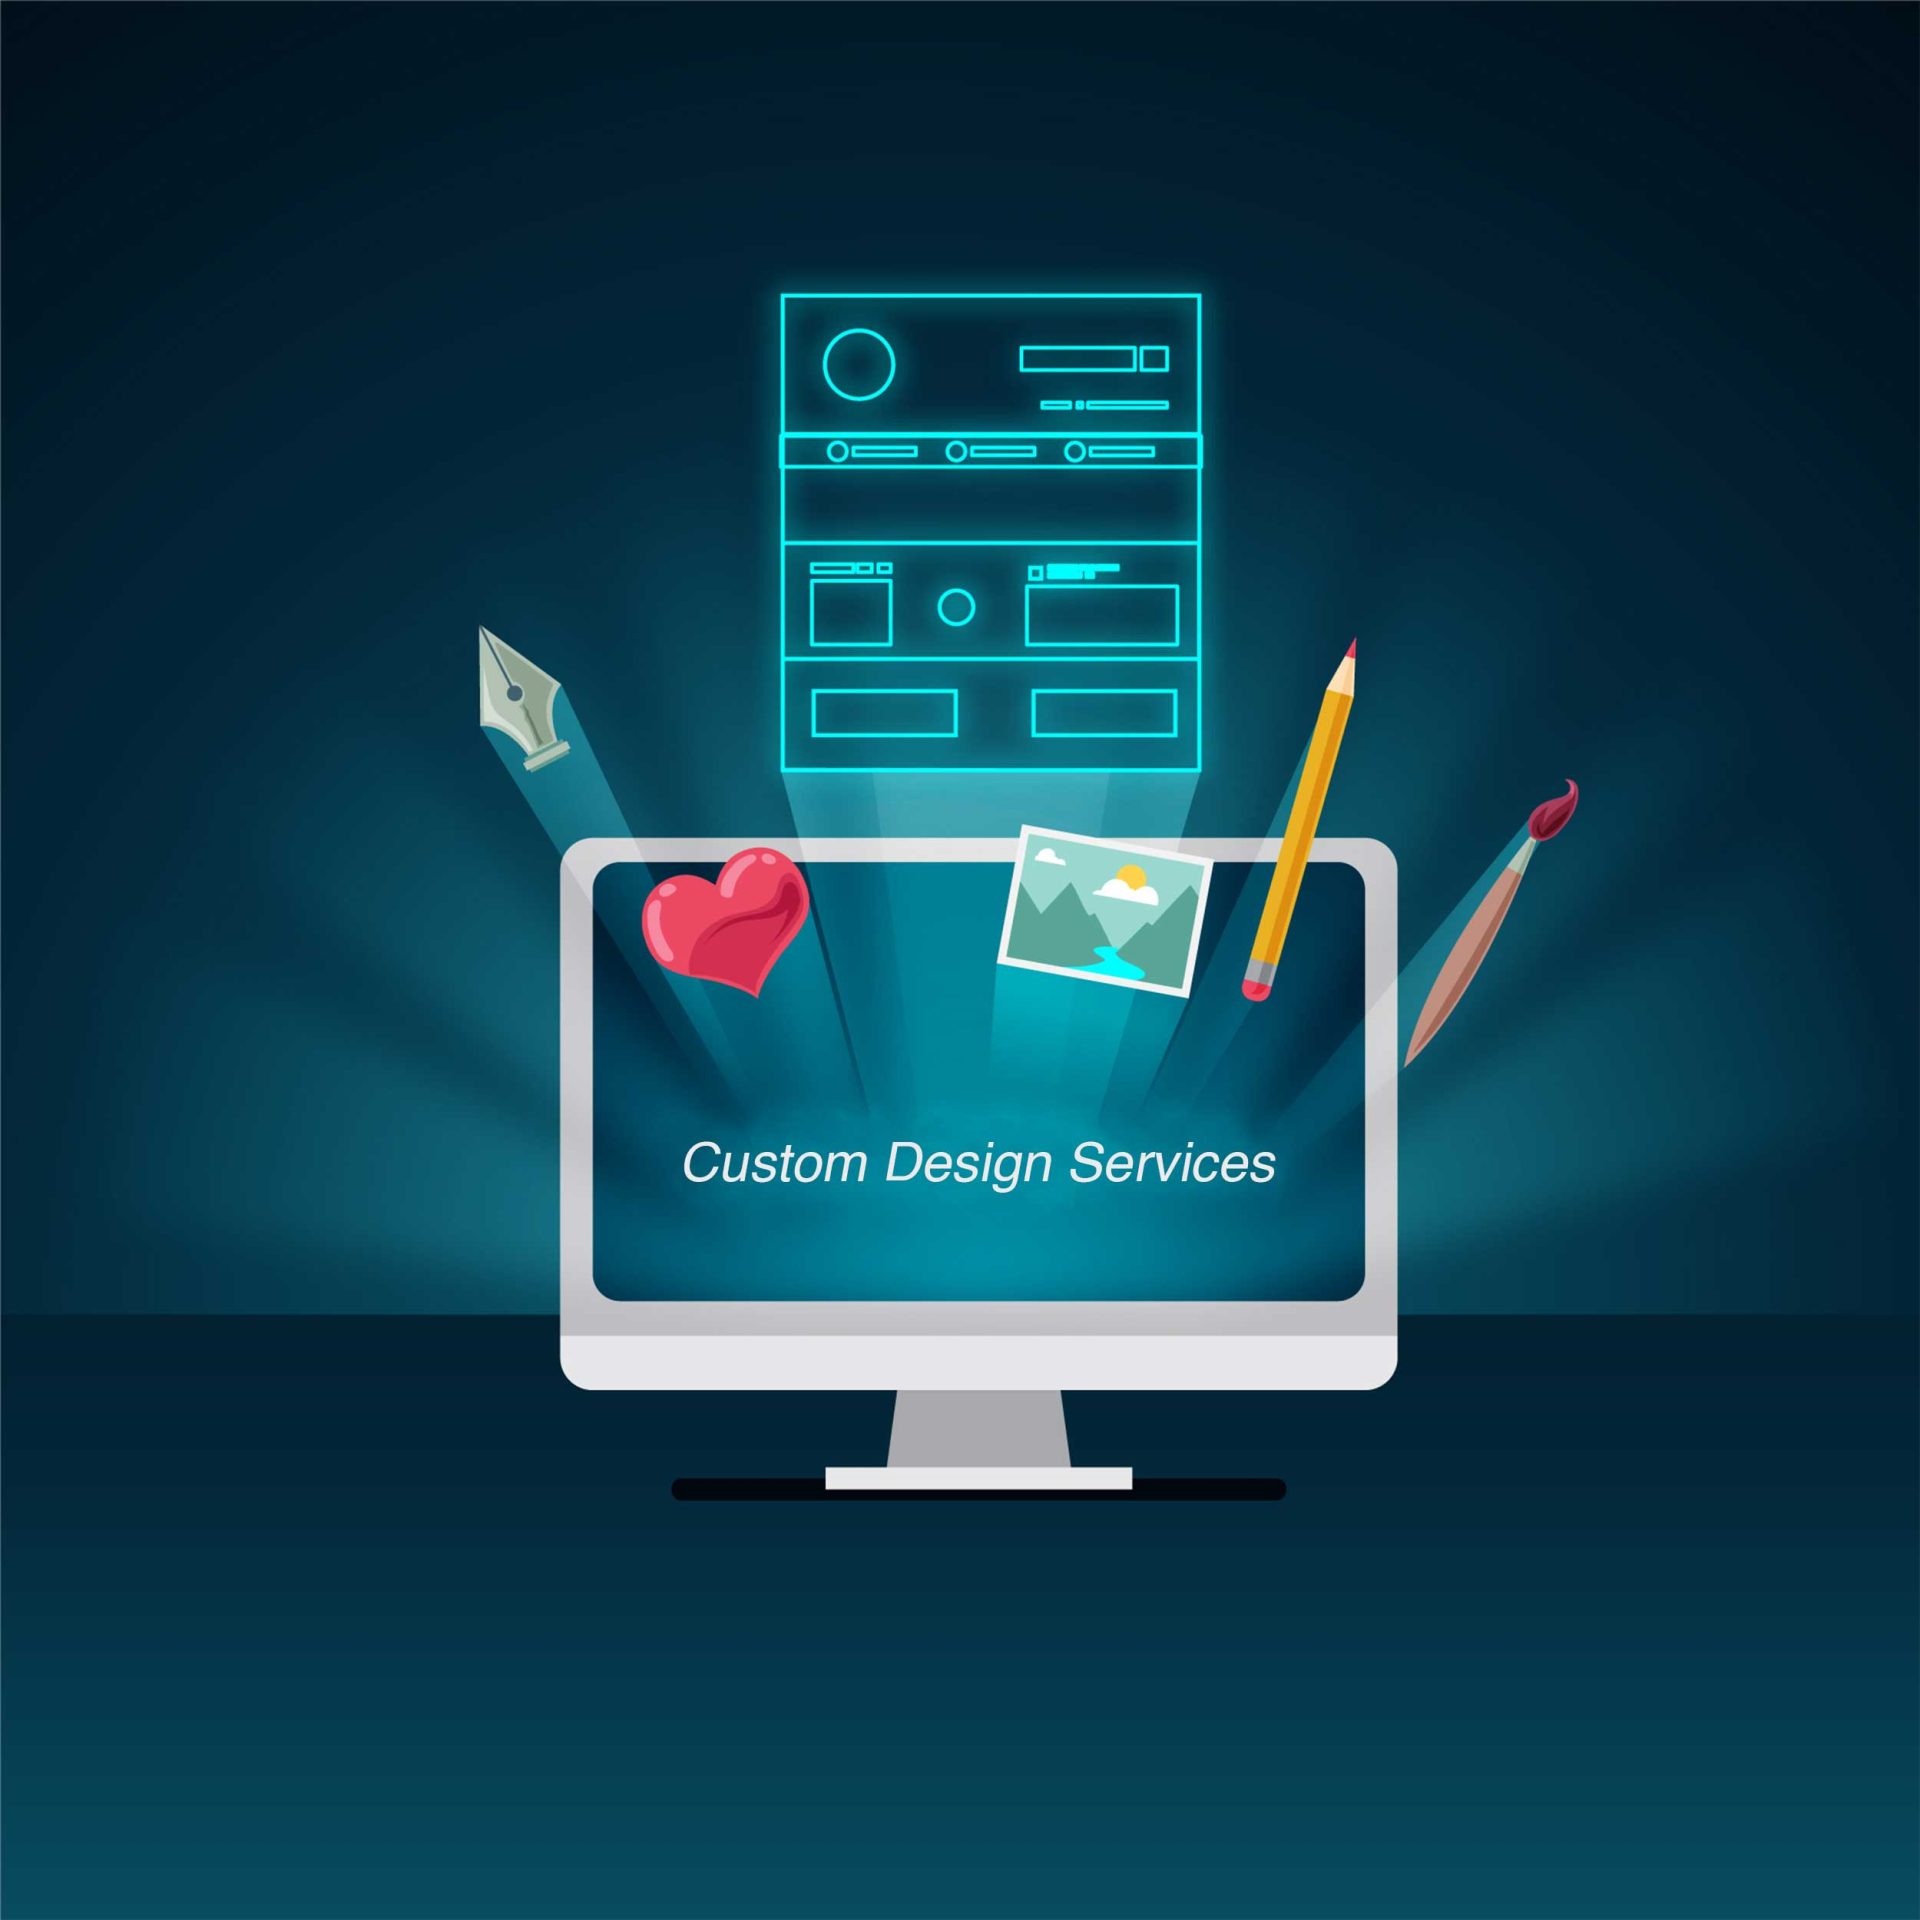 Custom Design Services